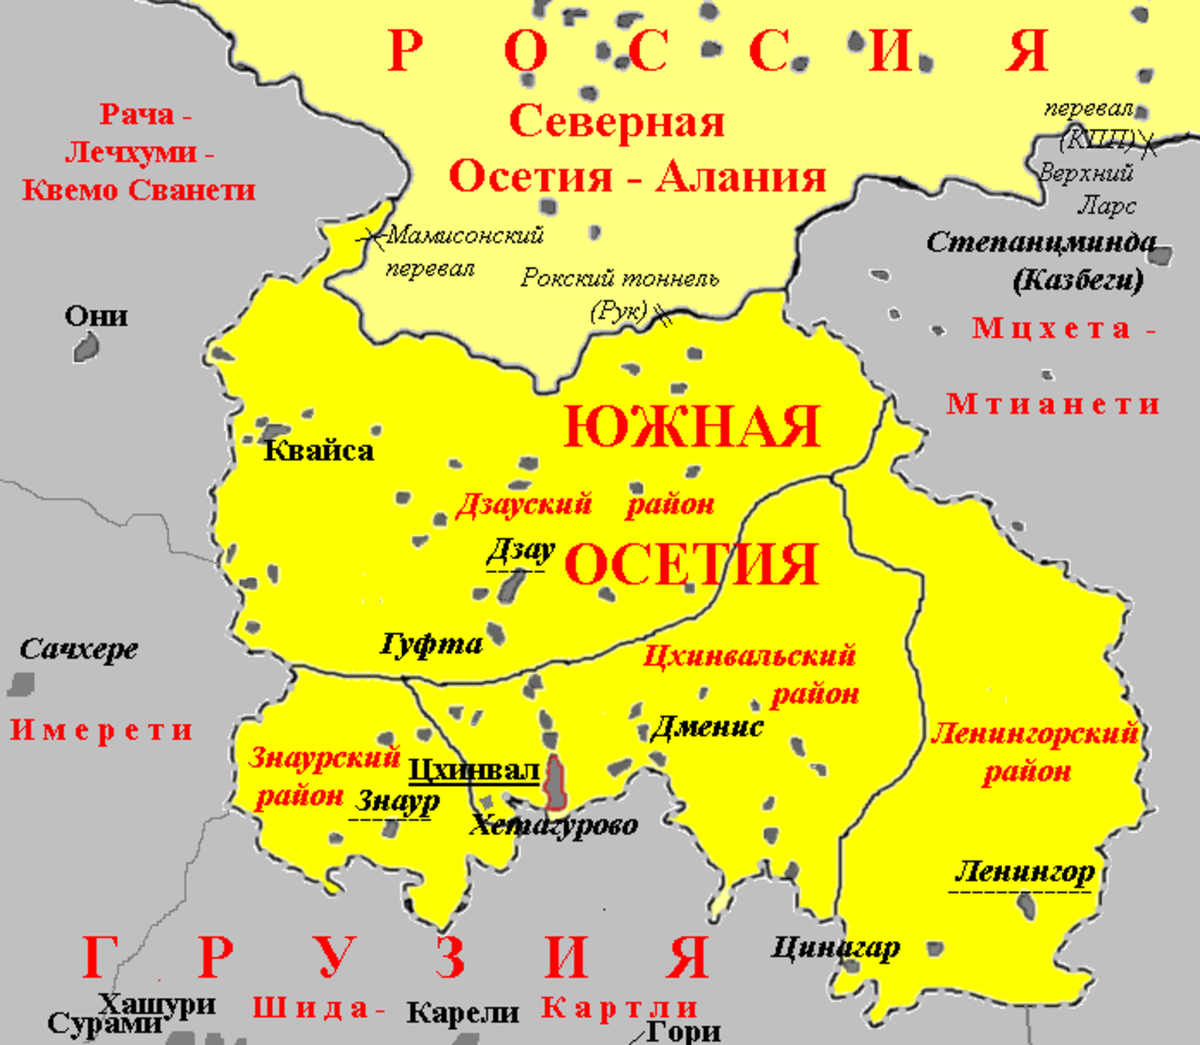 Осетины территория. Карта Южная Осетия граница с Россией. Знаурский район Южная Осетия на карте. Границы Южной и Северной Осетии на карте. Южная Осетия на карте граница.